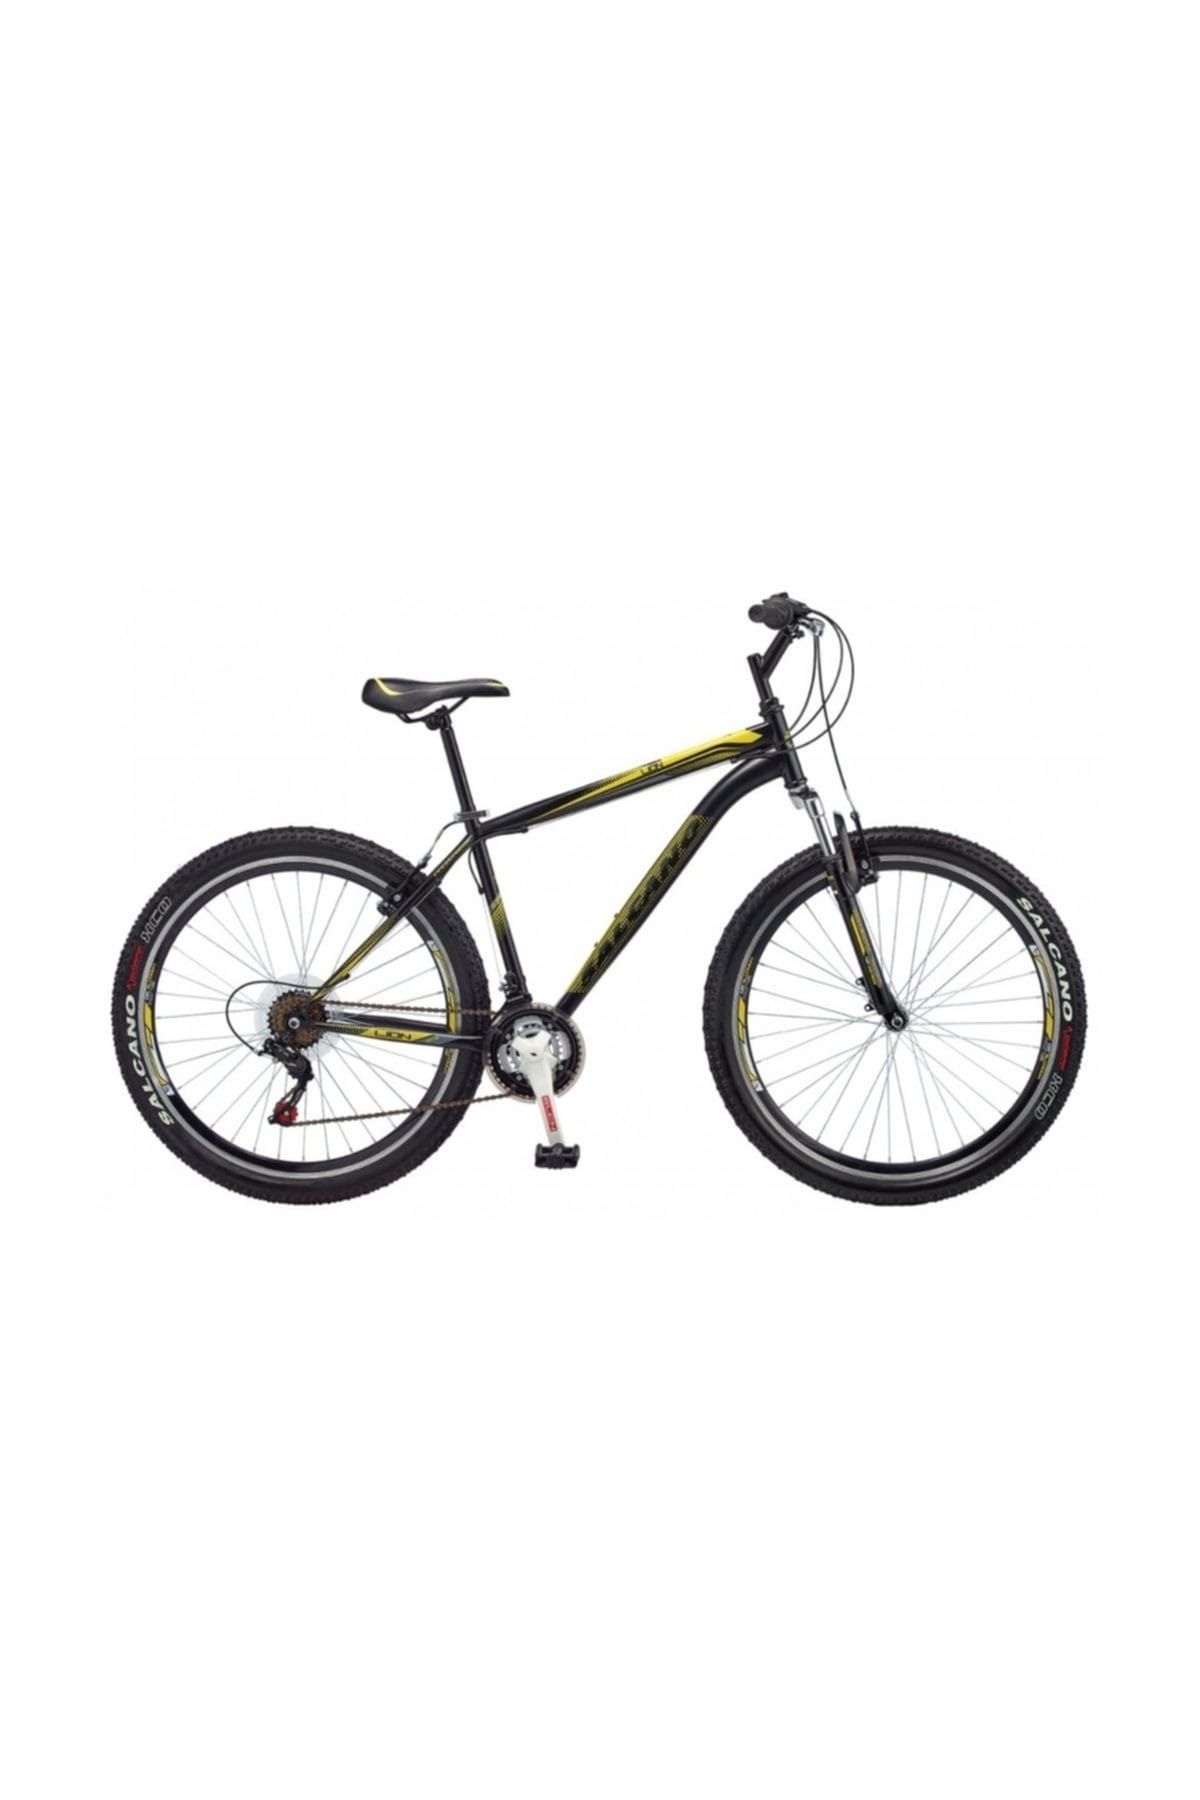 Salcano Lion 27,5 V 21 vites Dağ Bisikleti 2019 model